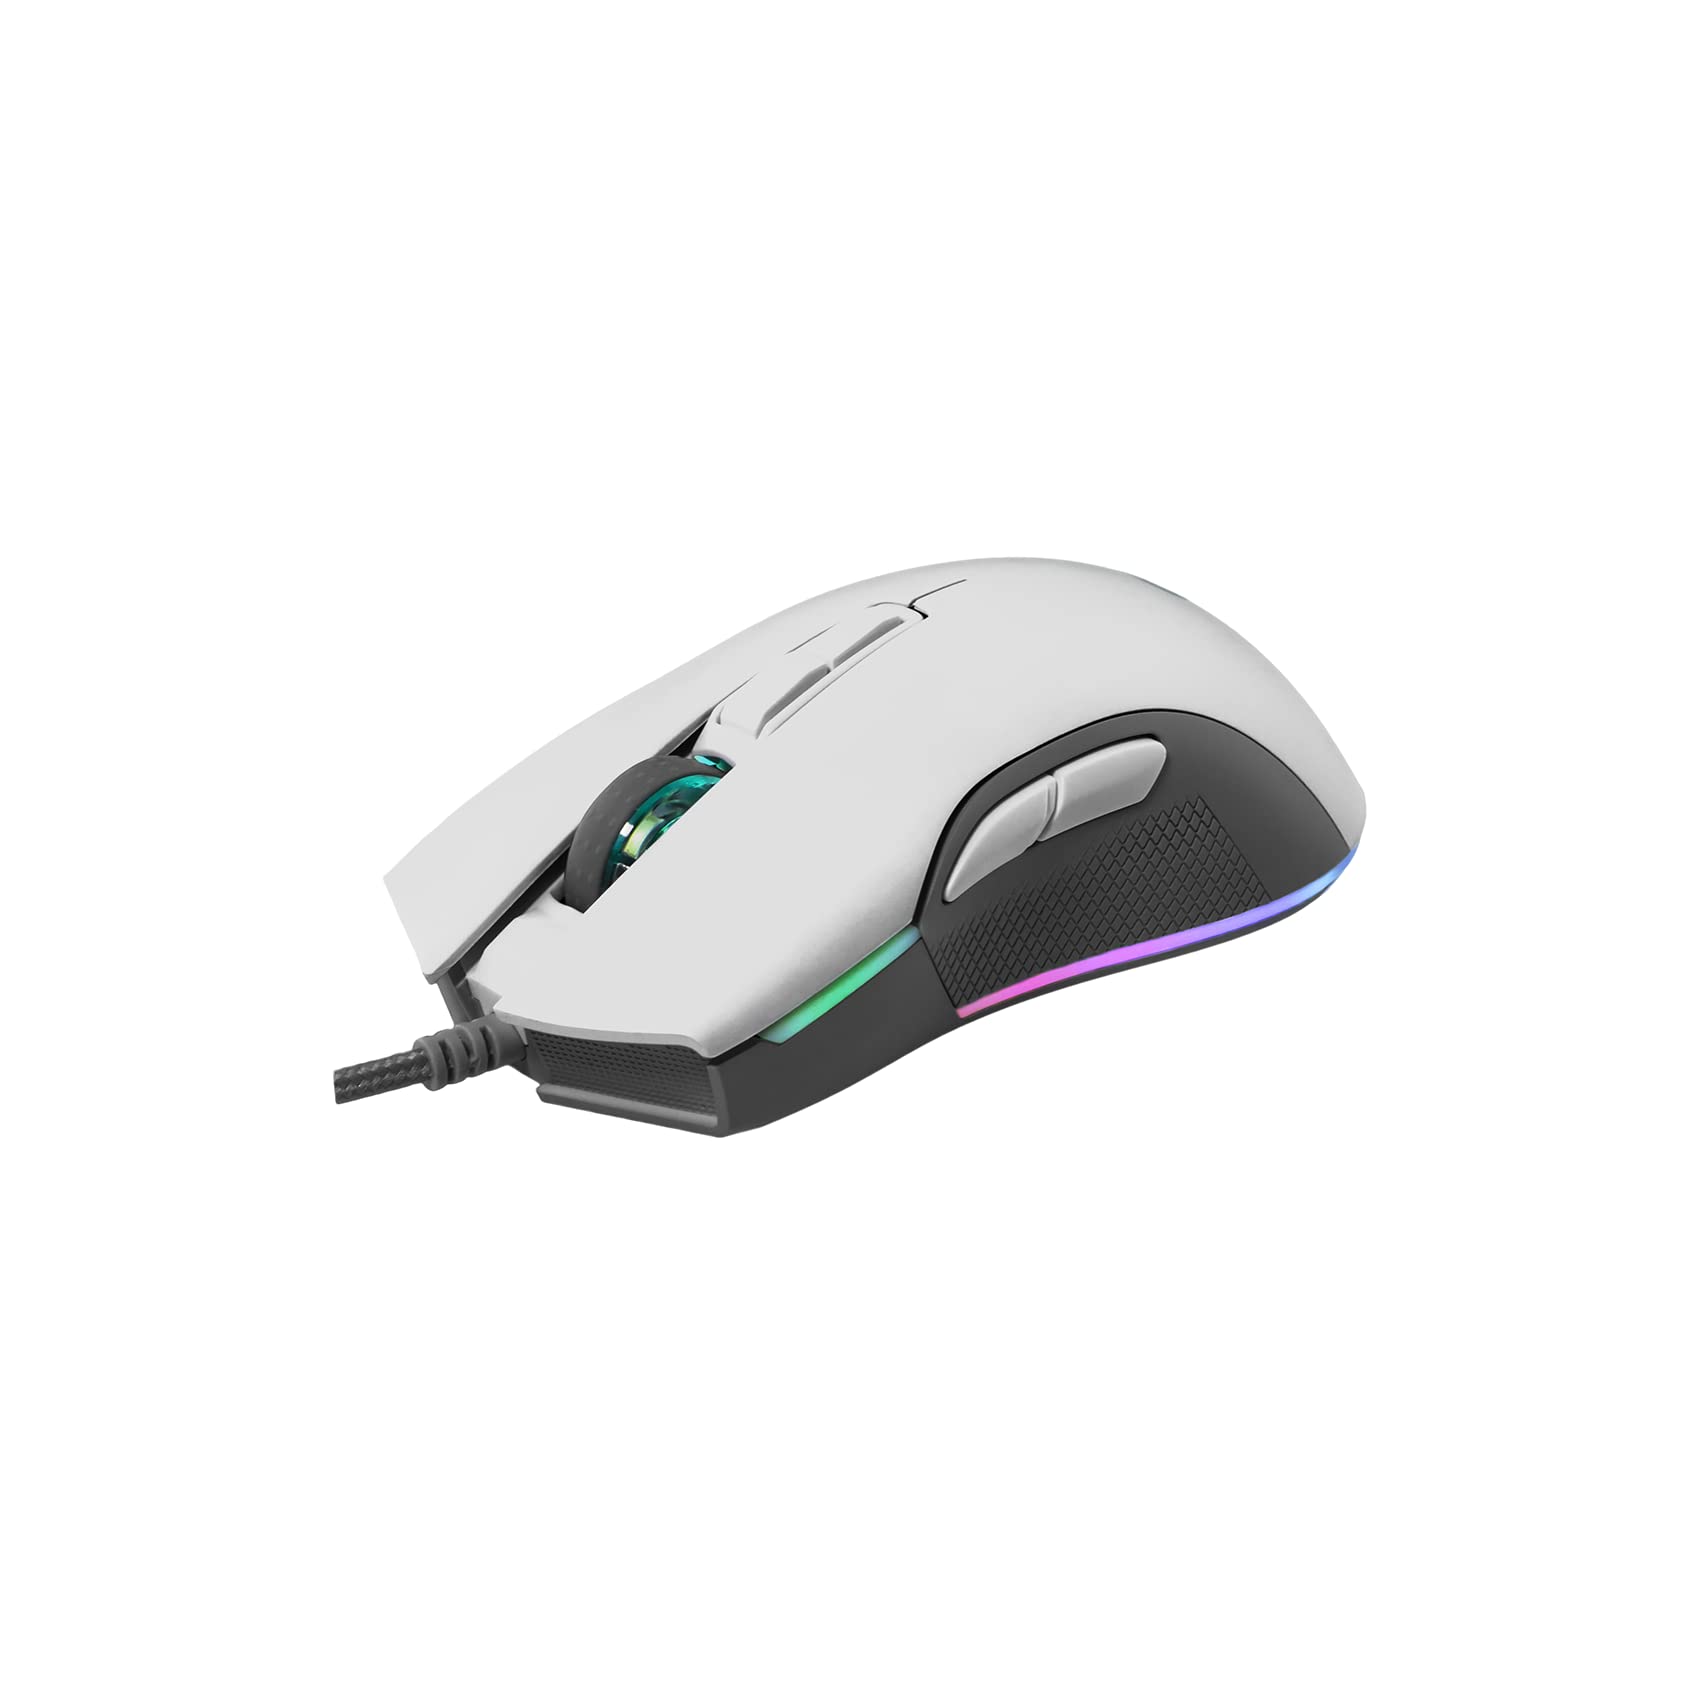 Newskill Eos Ivory Professionelle Gaming-Maus mit RGB-Beleuchtung, 16000 dpi und optischem Sensor Pixart PMW 3360, Weiß